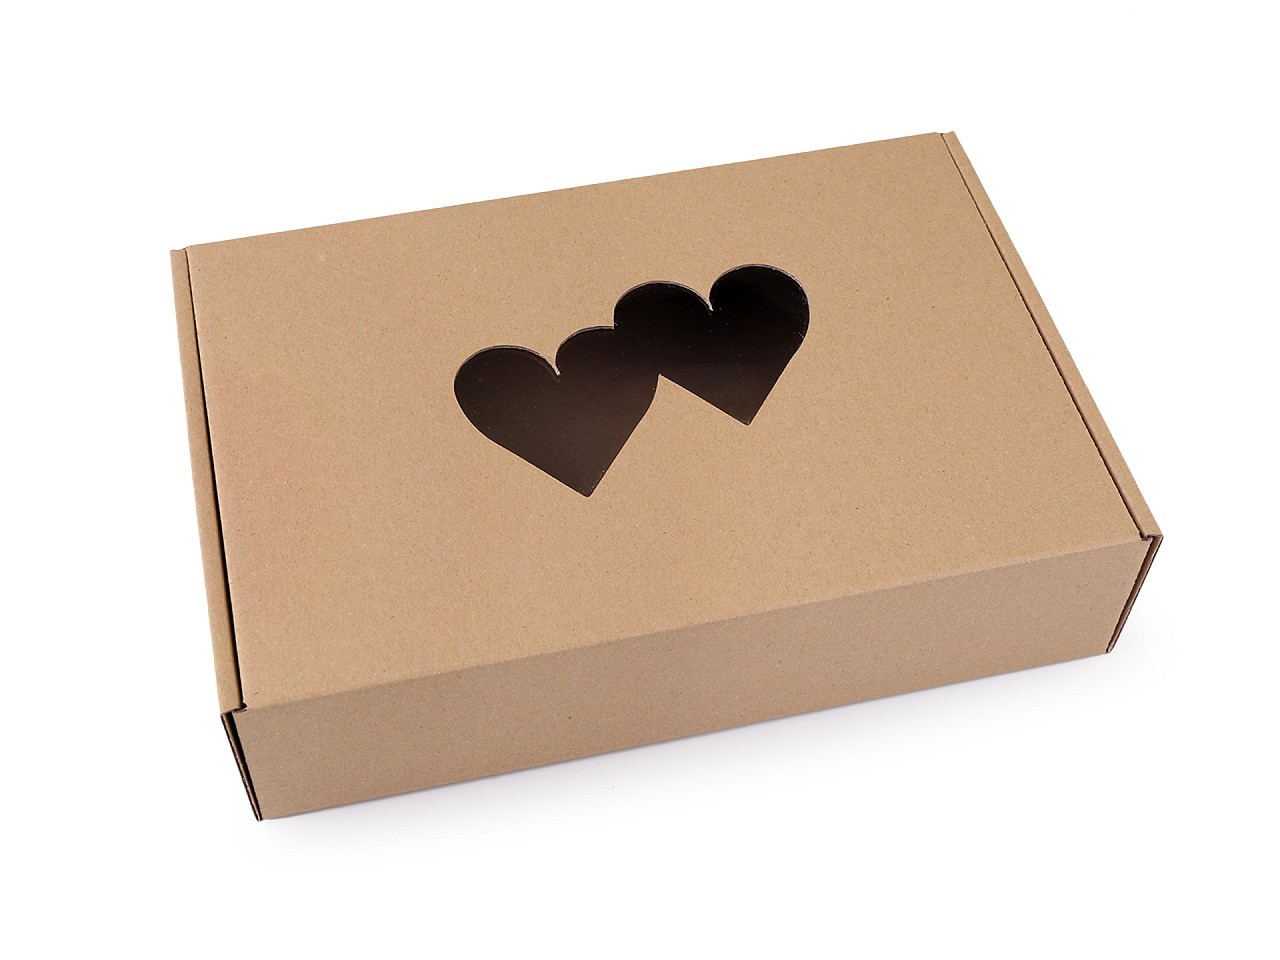 Papírová krabice s průhledem - srdce, barva 2 hnědá přírodní